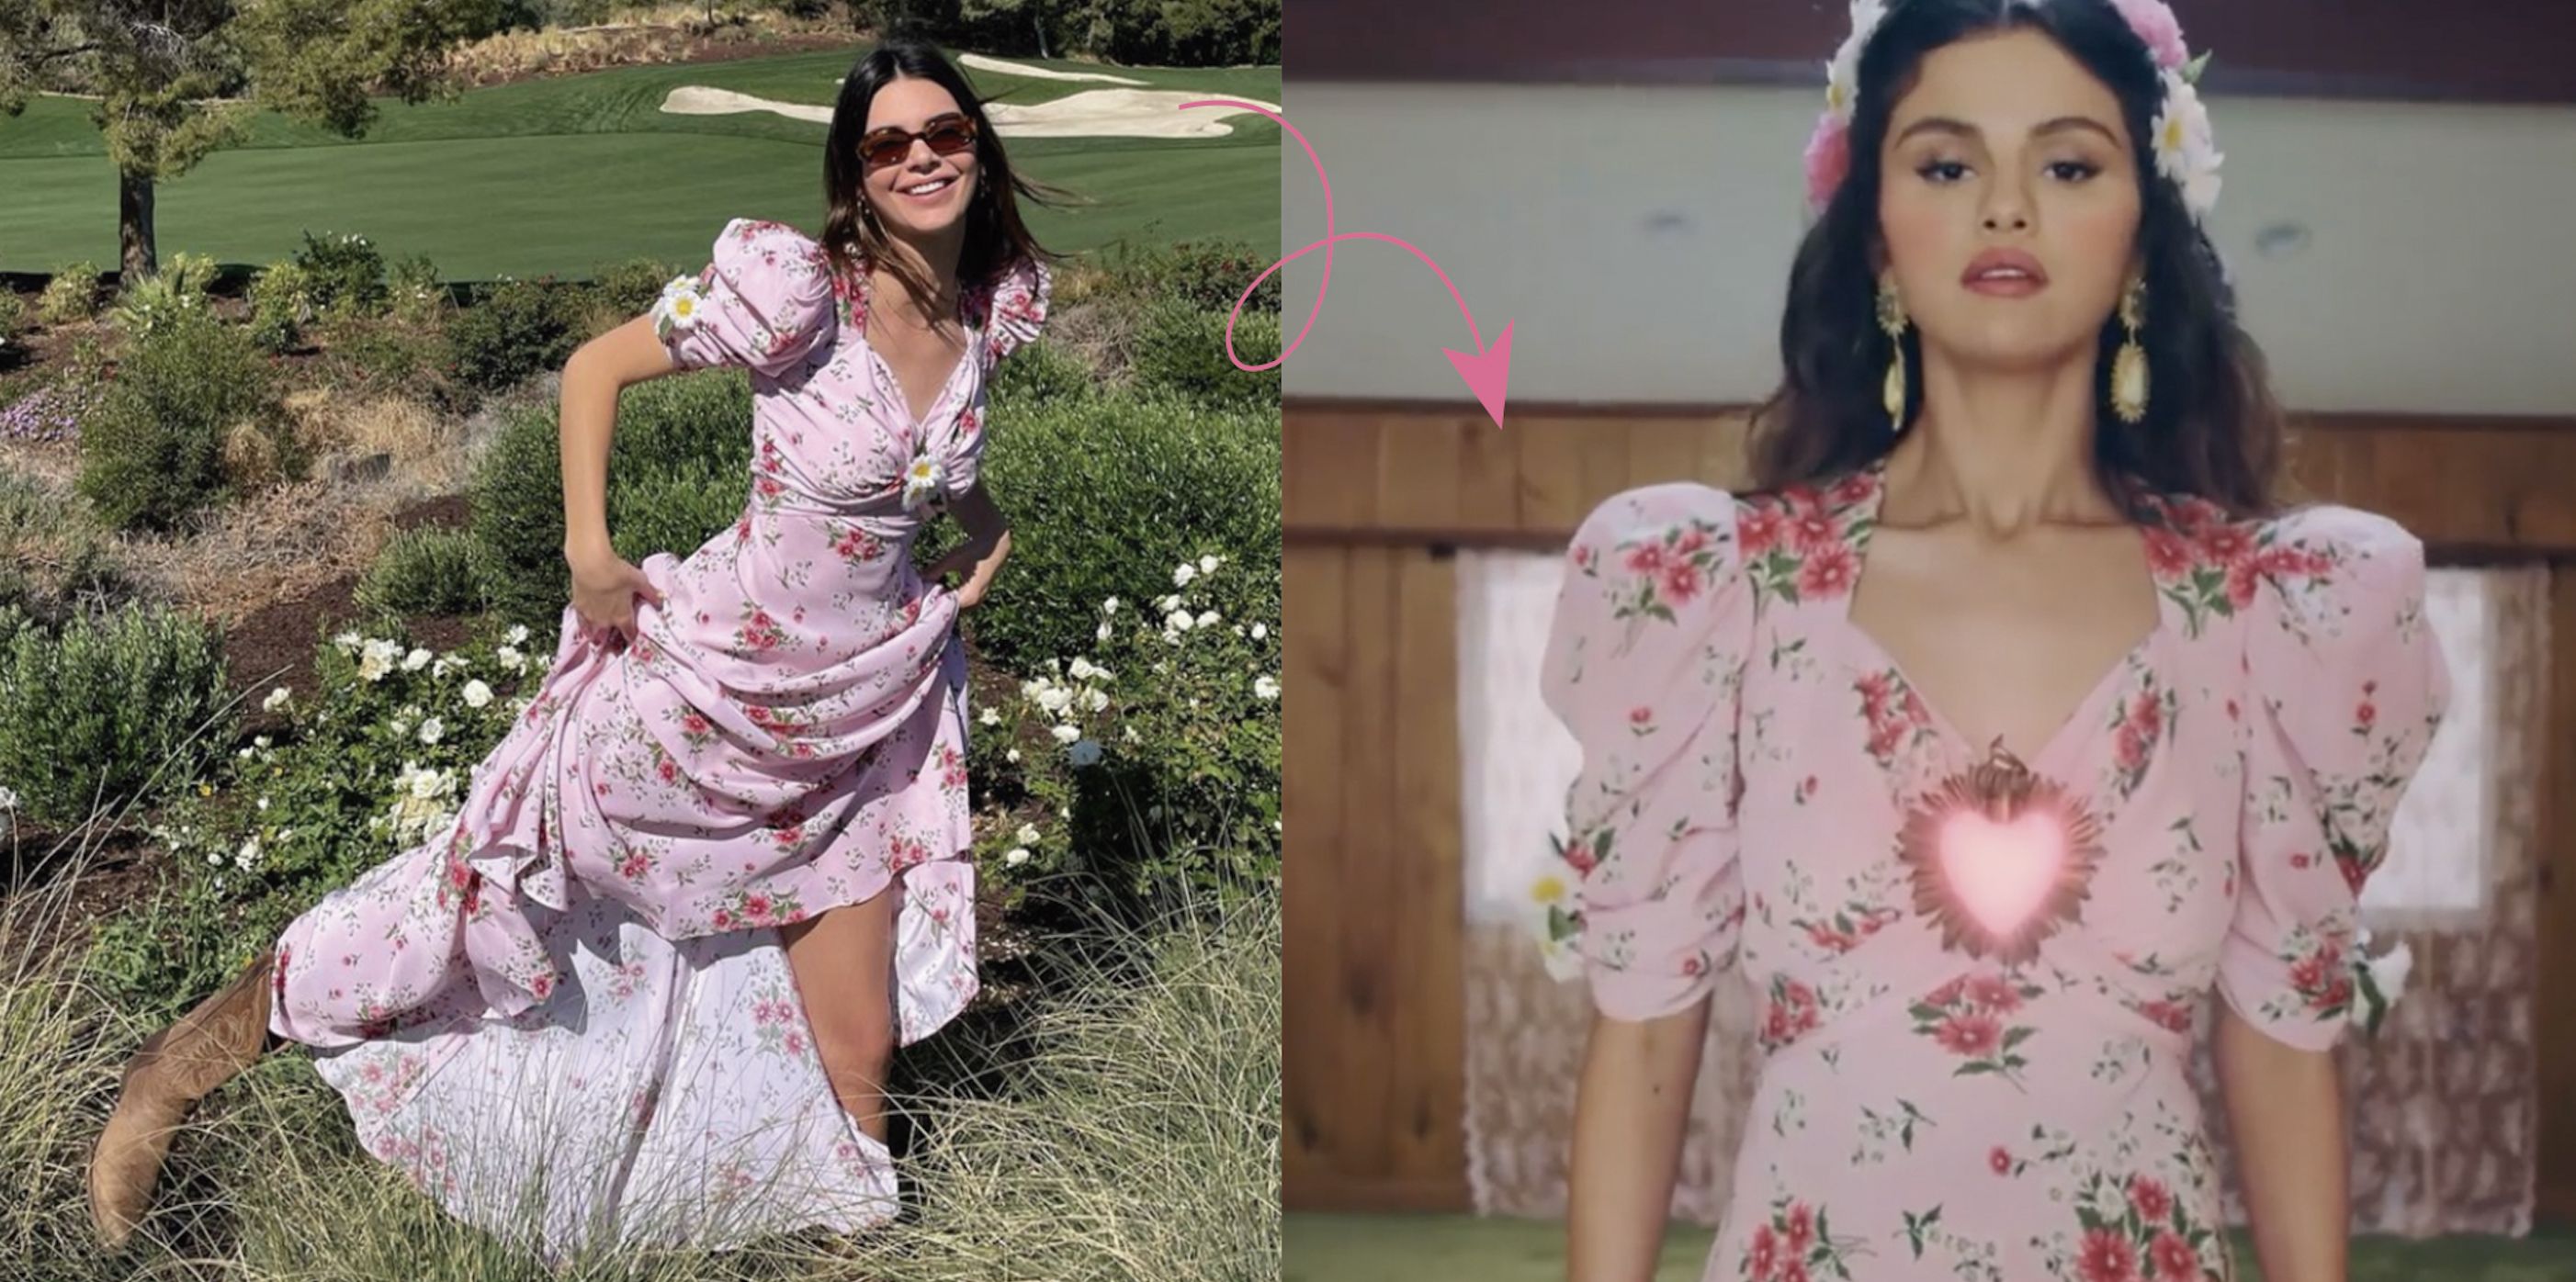 Vestidos de flores como el de Kendall Jenner y Selena Gomez